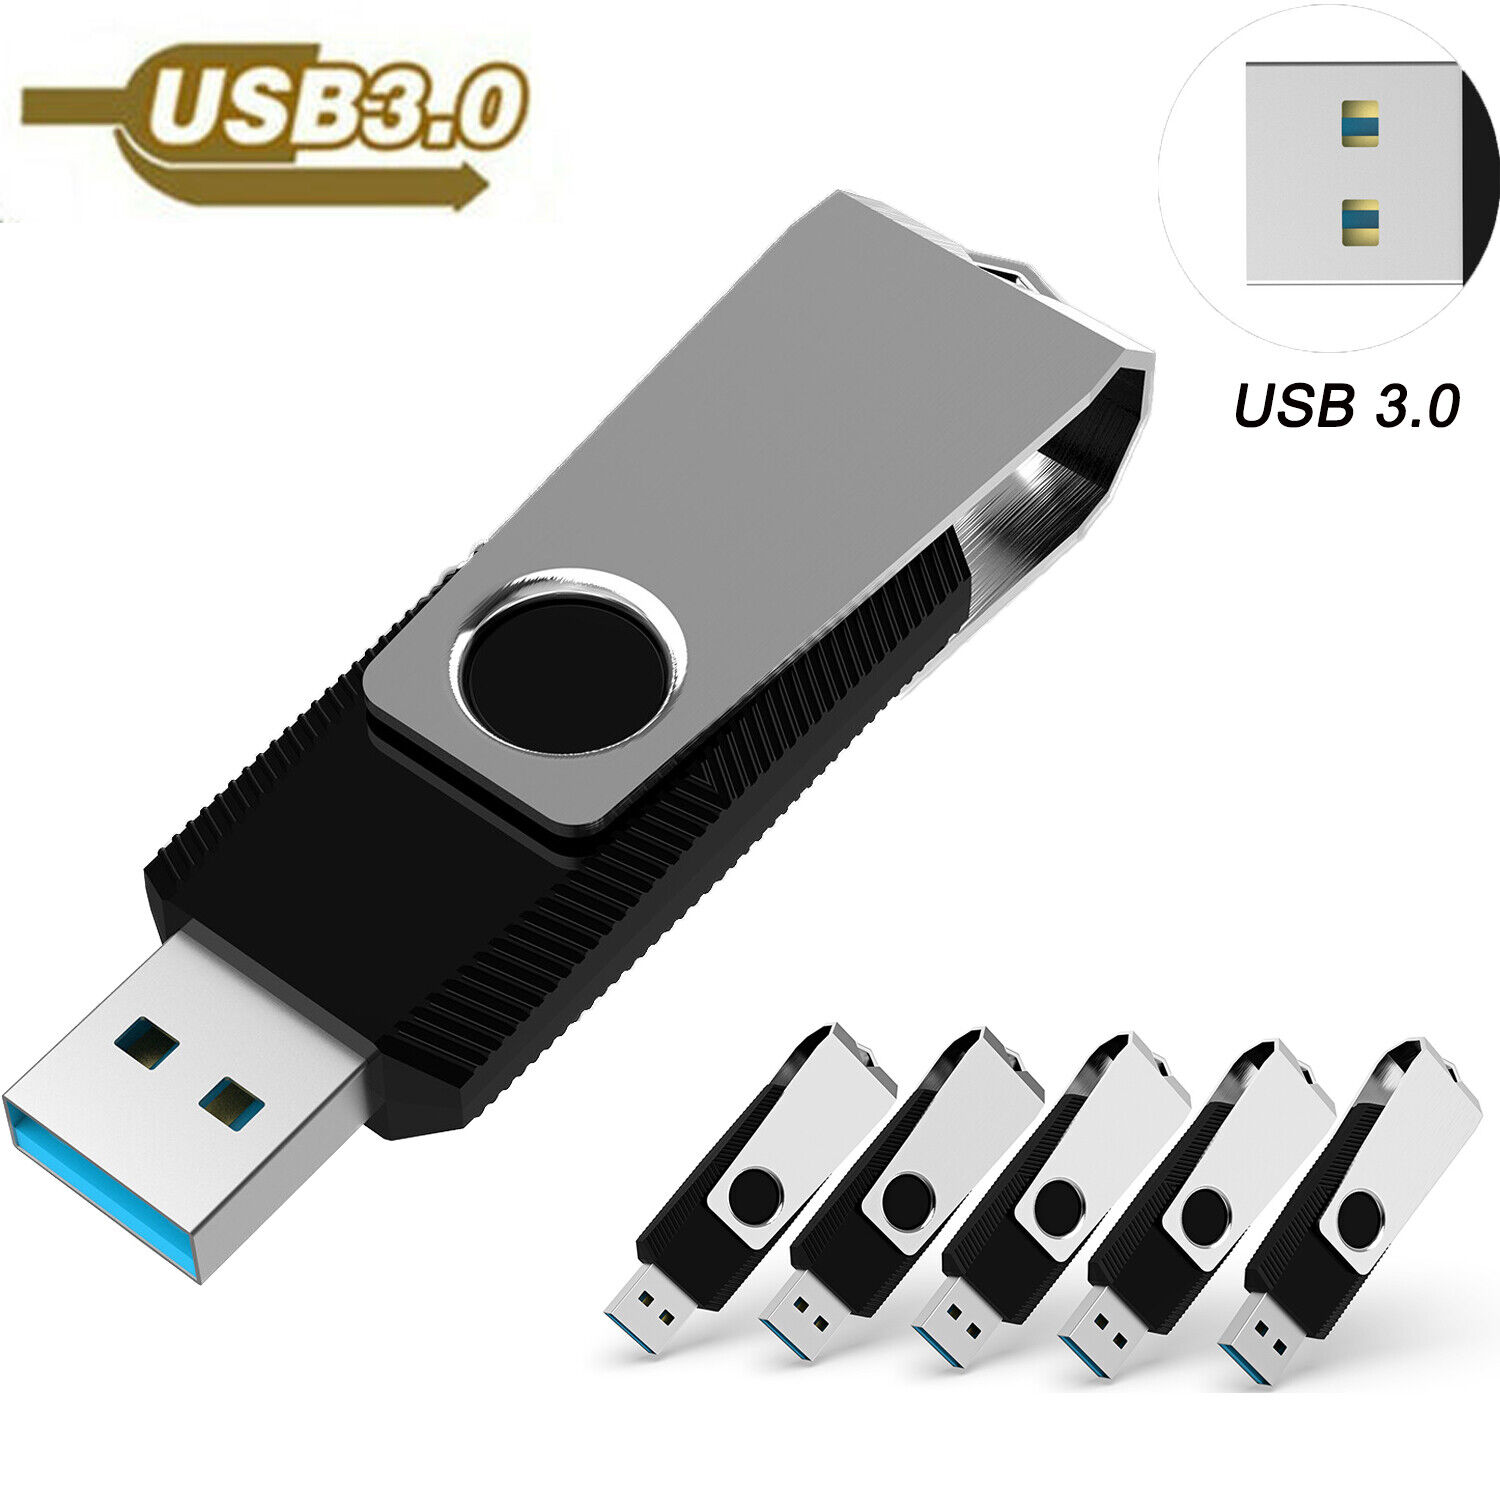 High Speed USB 3.0 Lot 5/ 10x 16GB Metal Anti-skid USB Flash Drive Memory Sticks